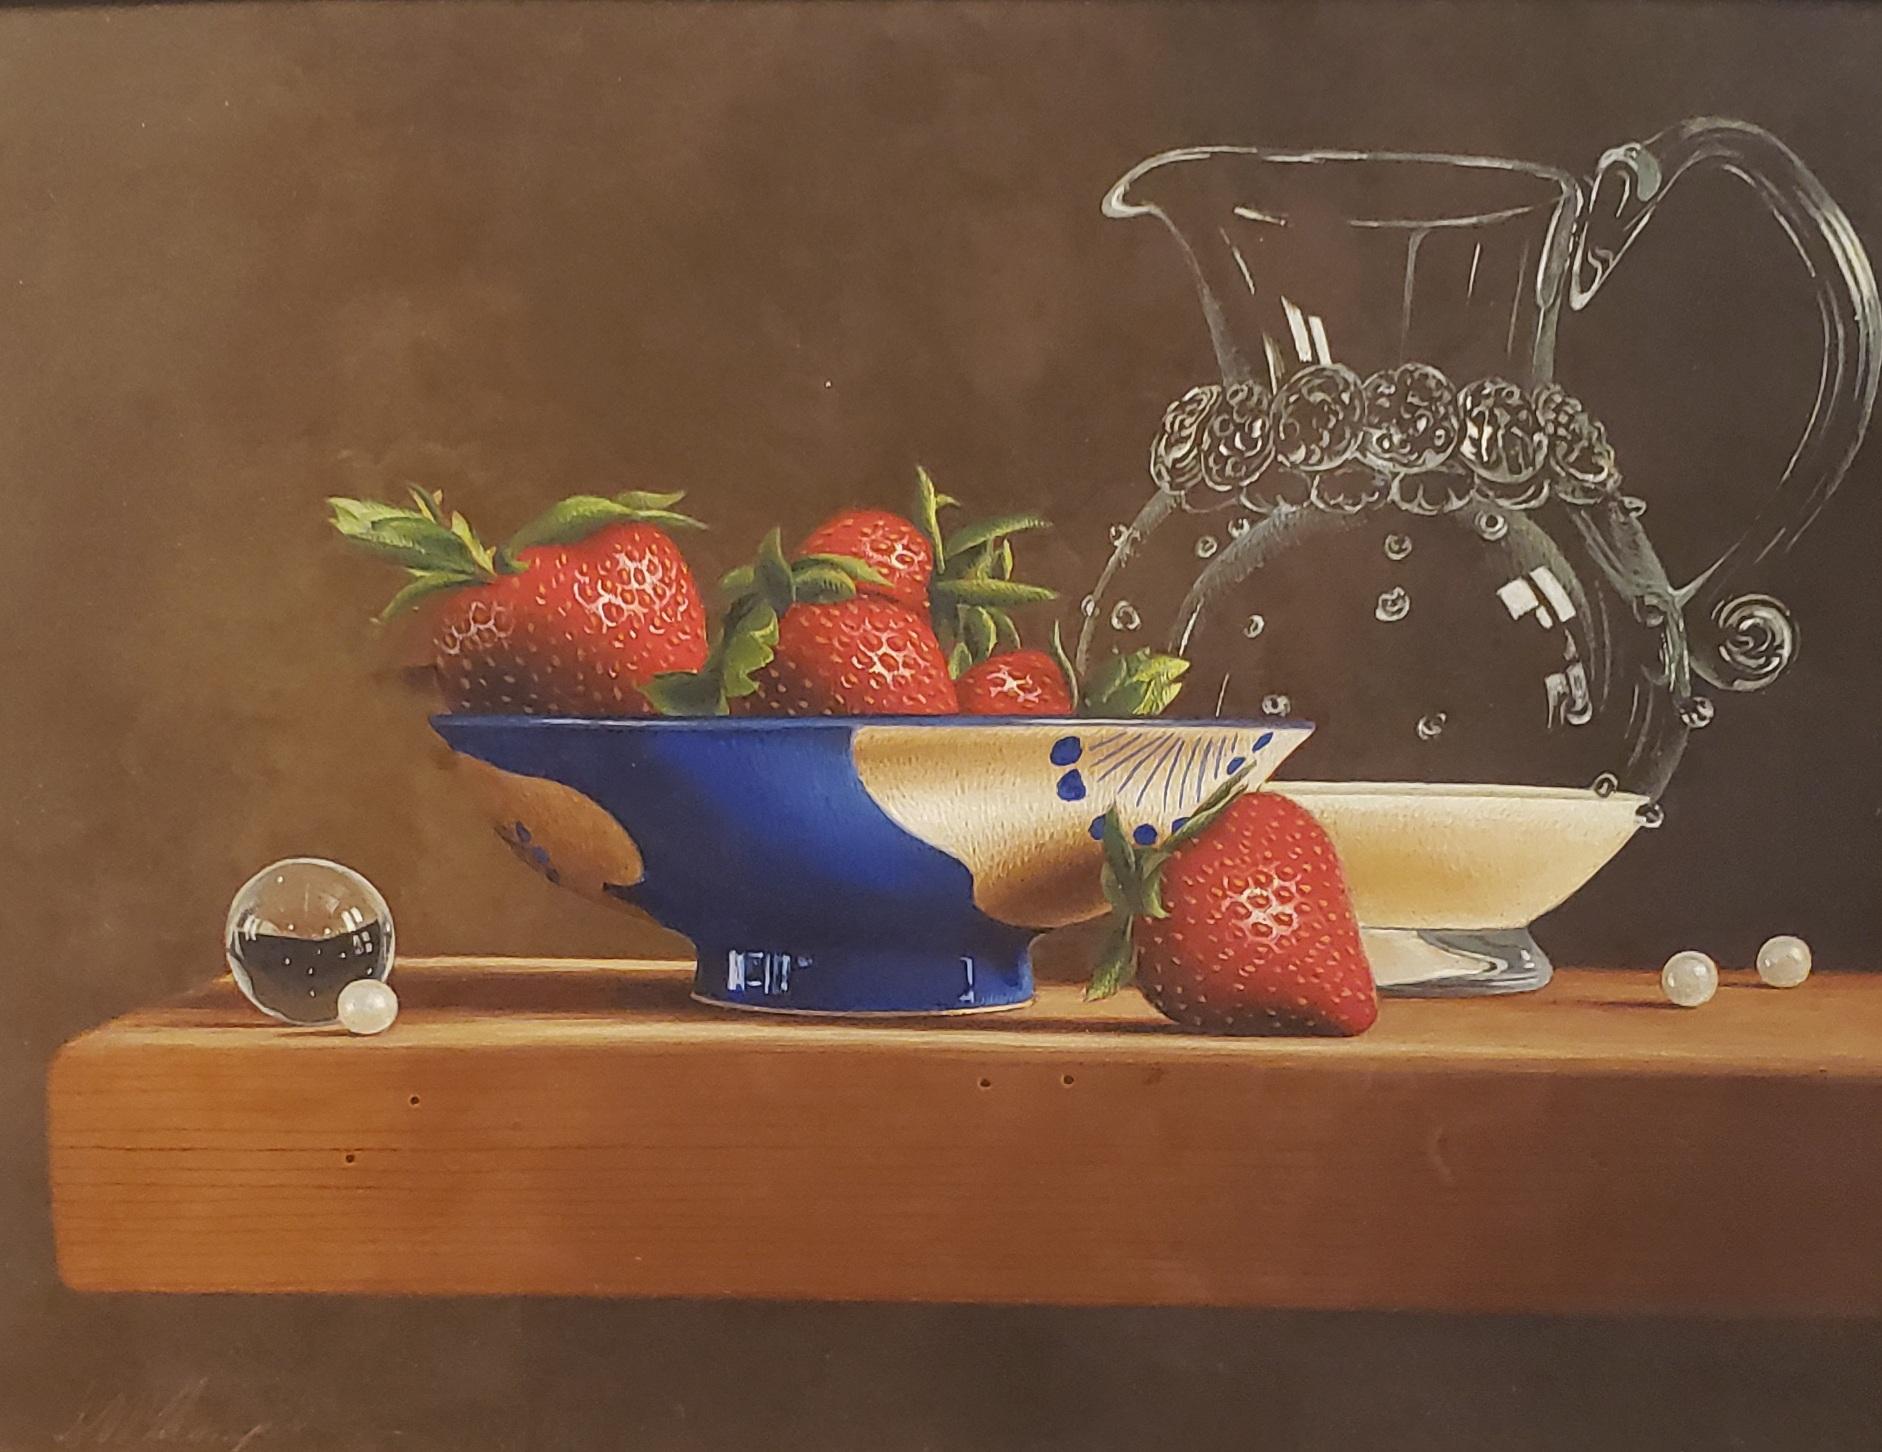 Erdbeer und Creme, Eitempera,  Realismus,  3D-Applikation, amerikanische Künstlerin